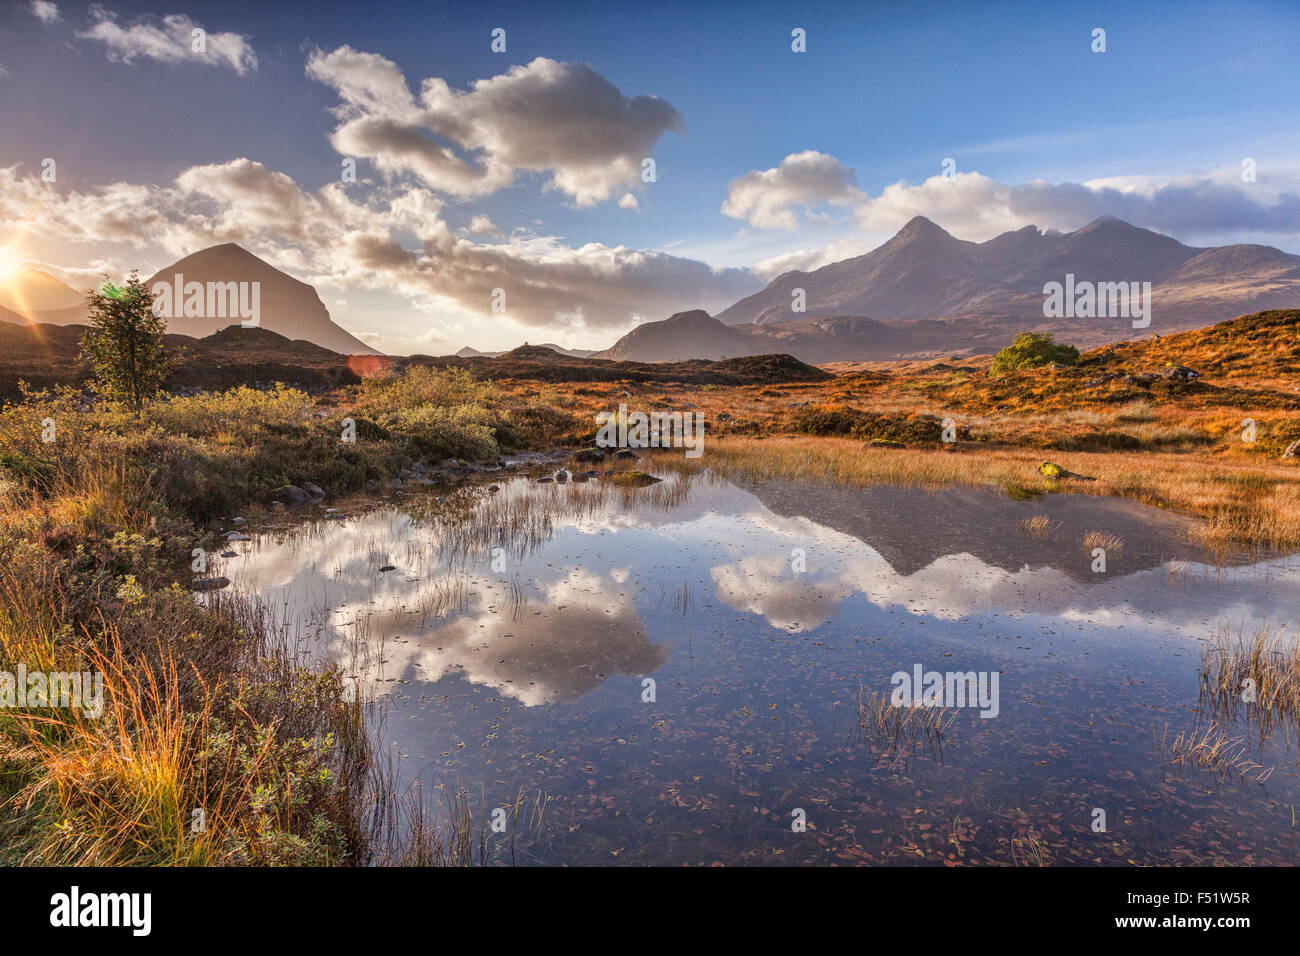 Die Cullins, Herbst, bei Sonnenaufgang, spiegelt sich in einer Lache des Wassers, Isle Of Skye, innere Hebriden, Highland, Schottland, UK Stockfoto